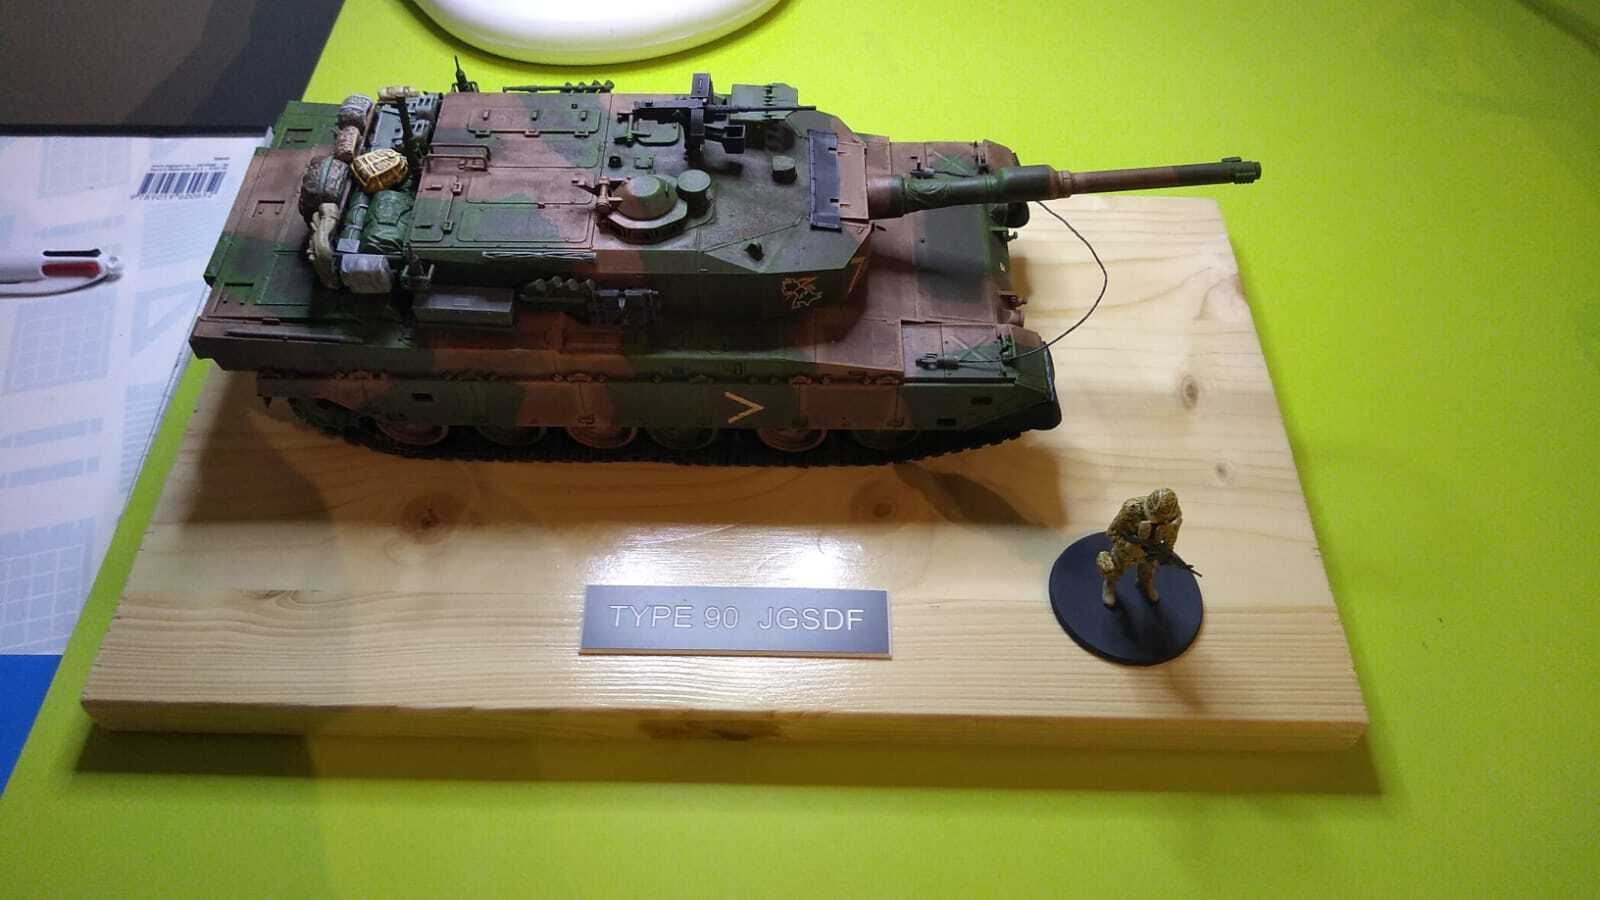 [Convoi] Type 90 MBT et ARV Tamiya + Etokin Model - Page 2 Zmd9